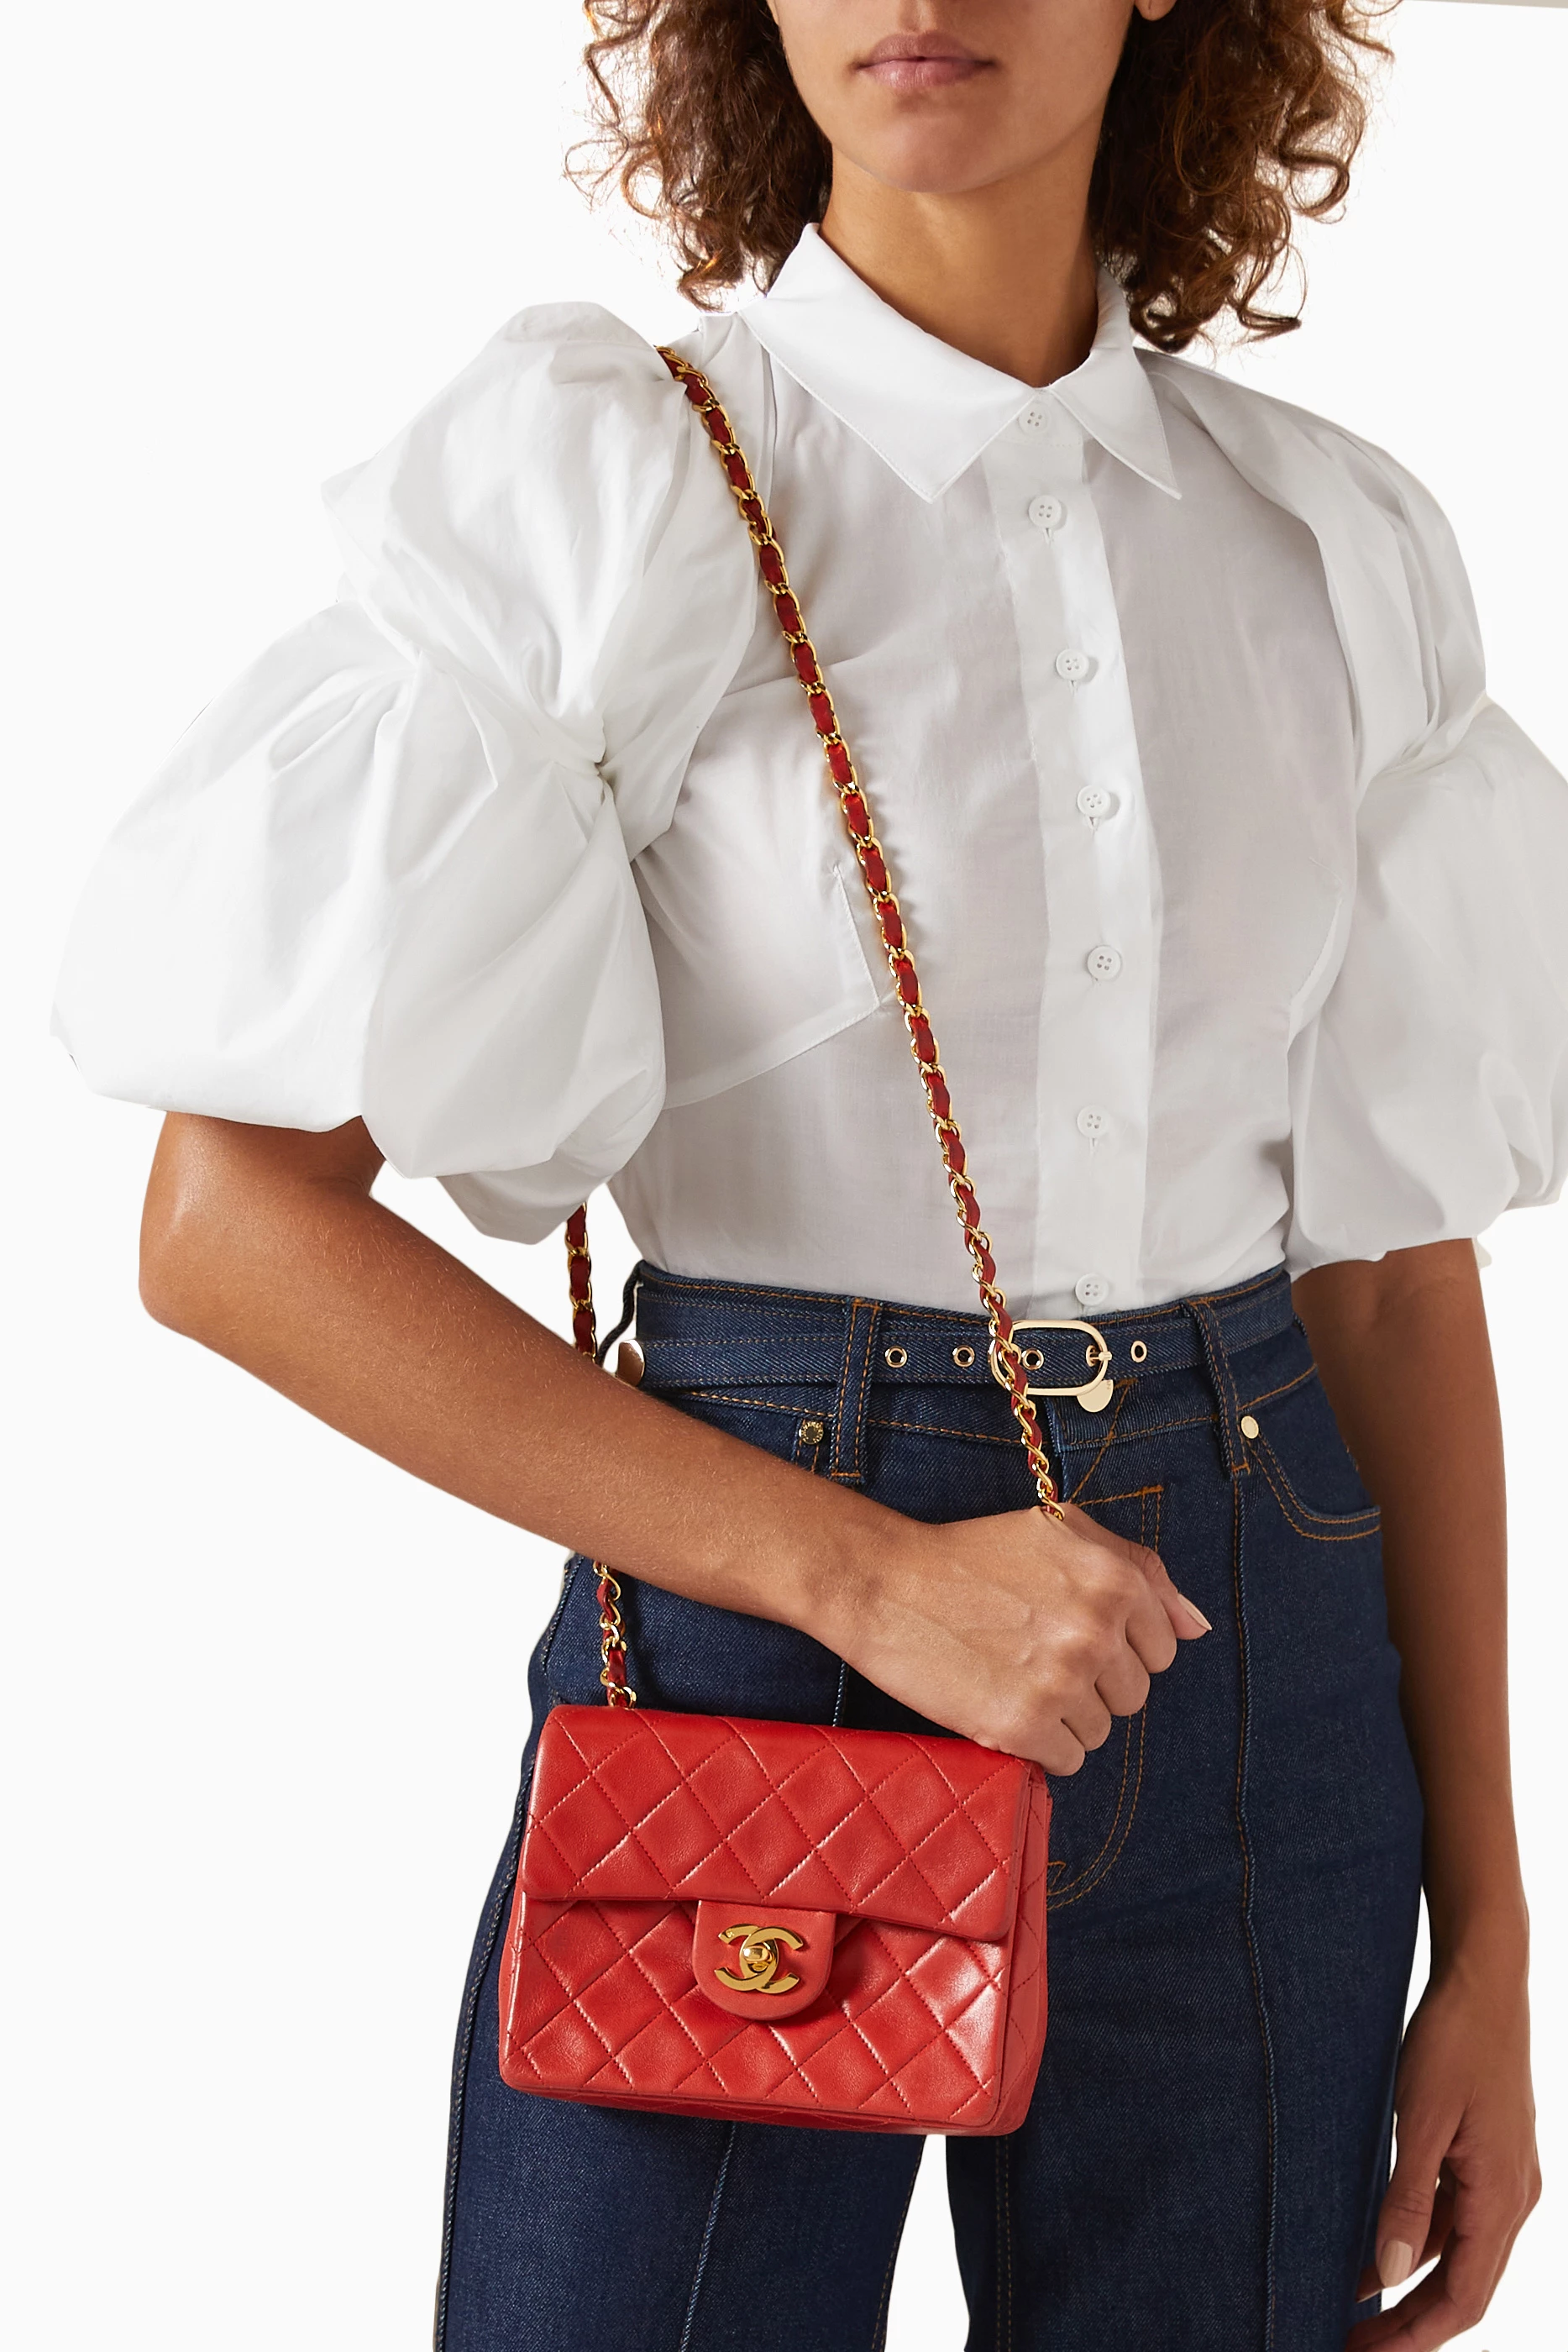 Chanel Bow Classic Belt Bag